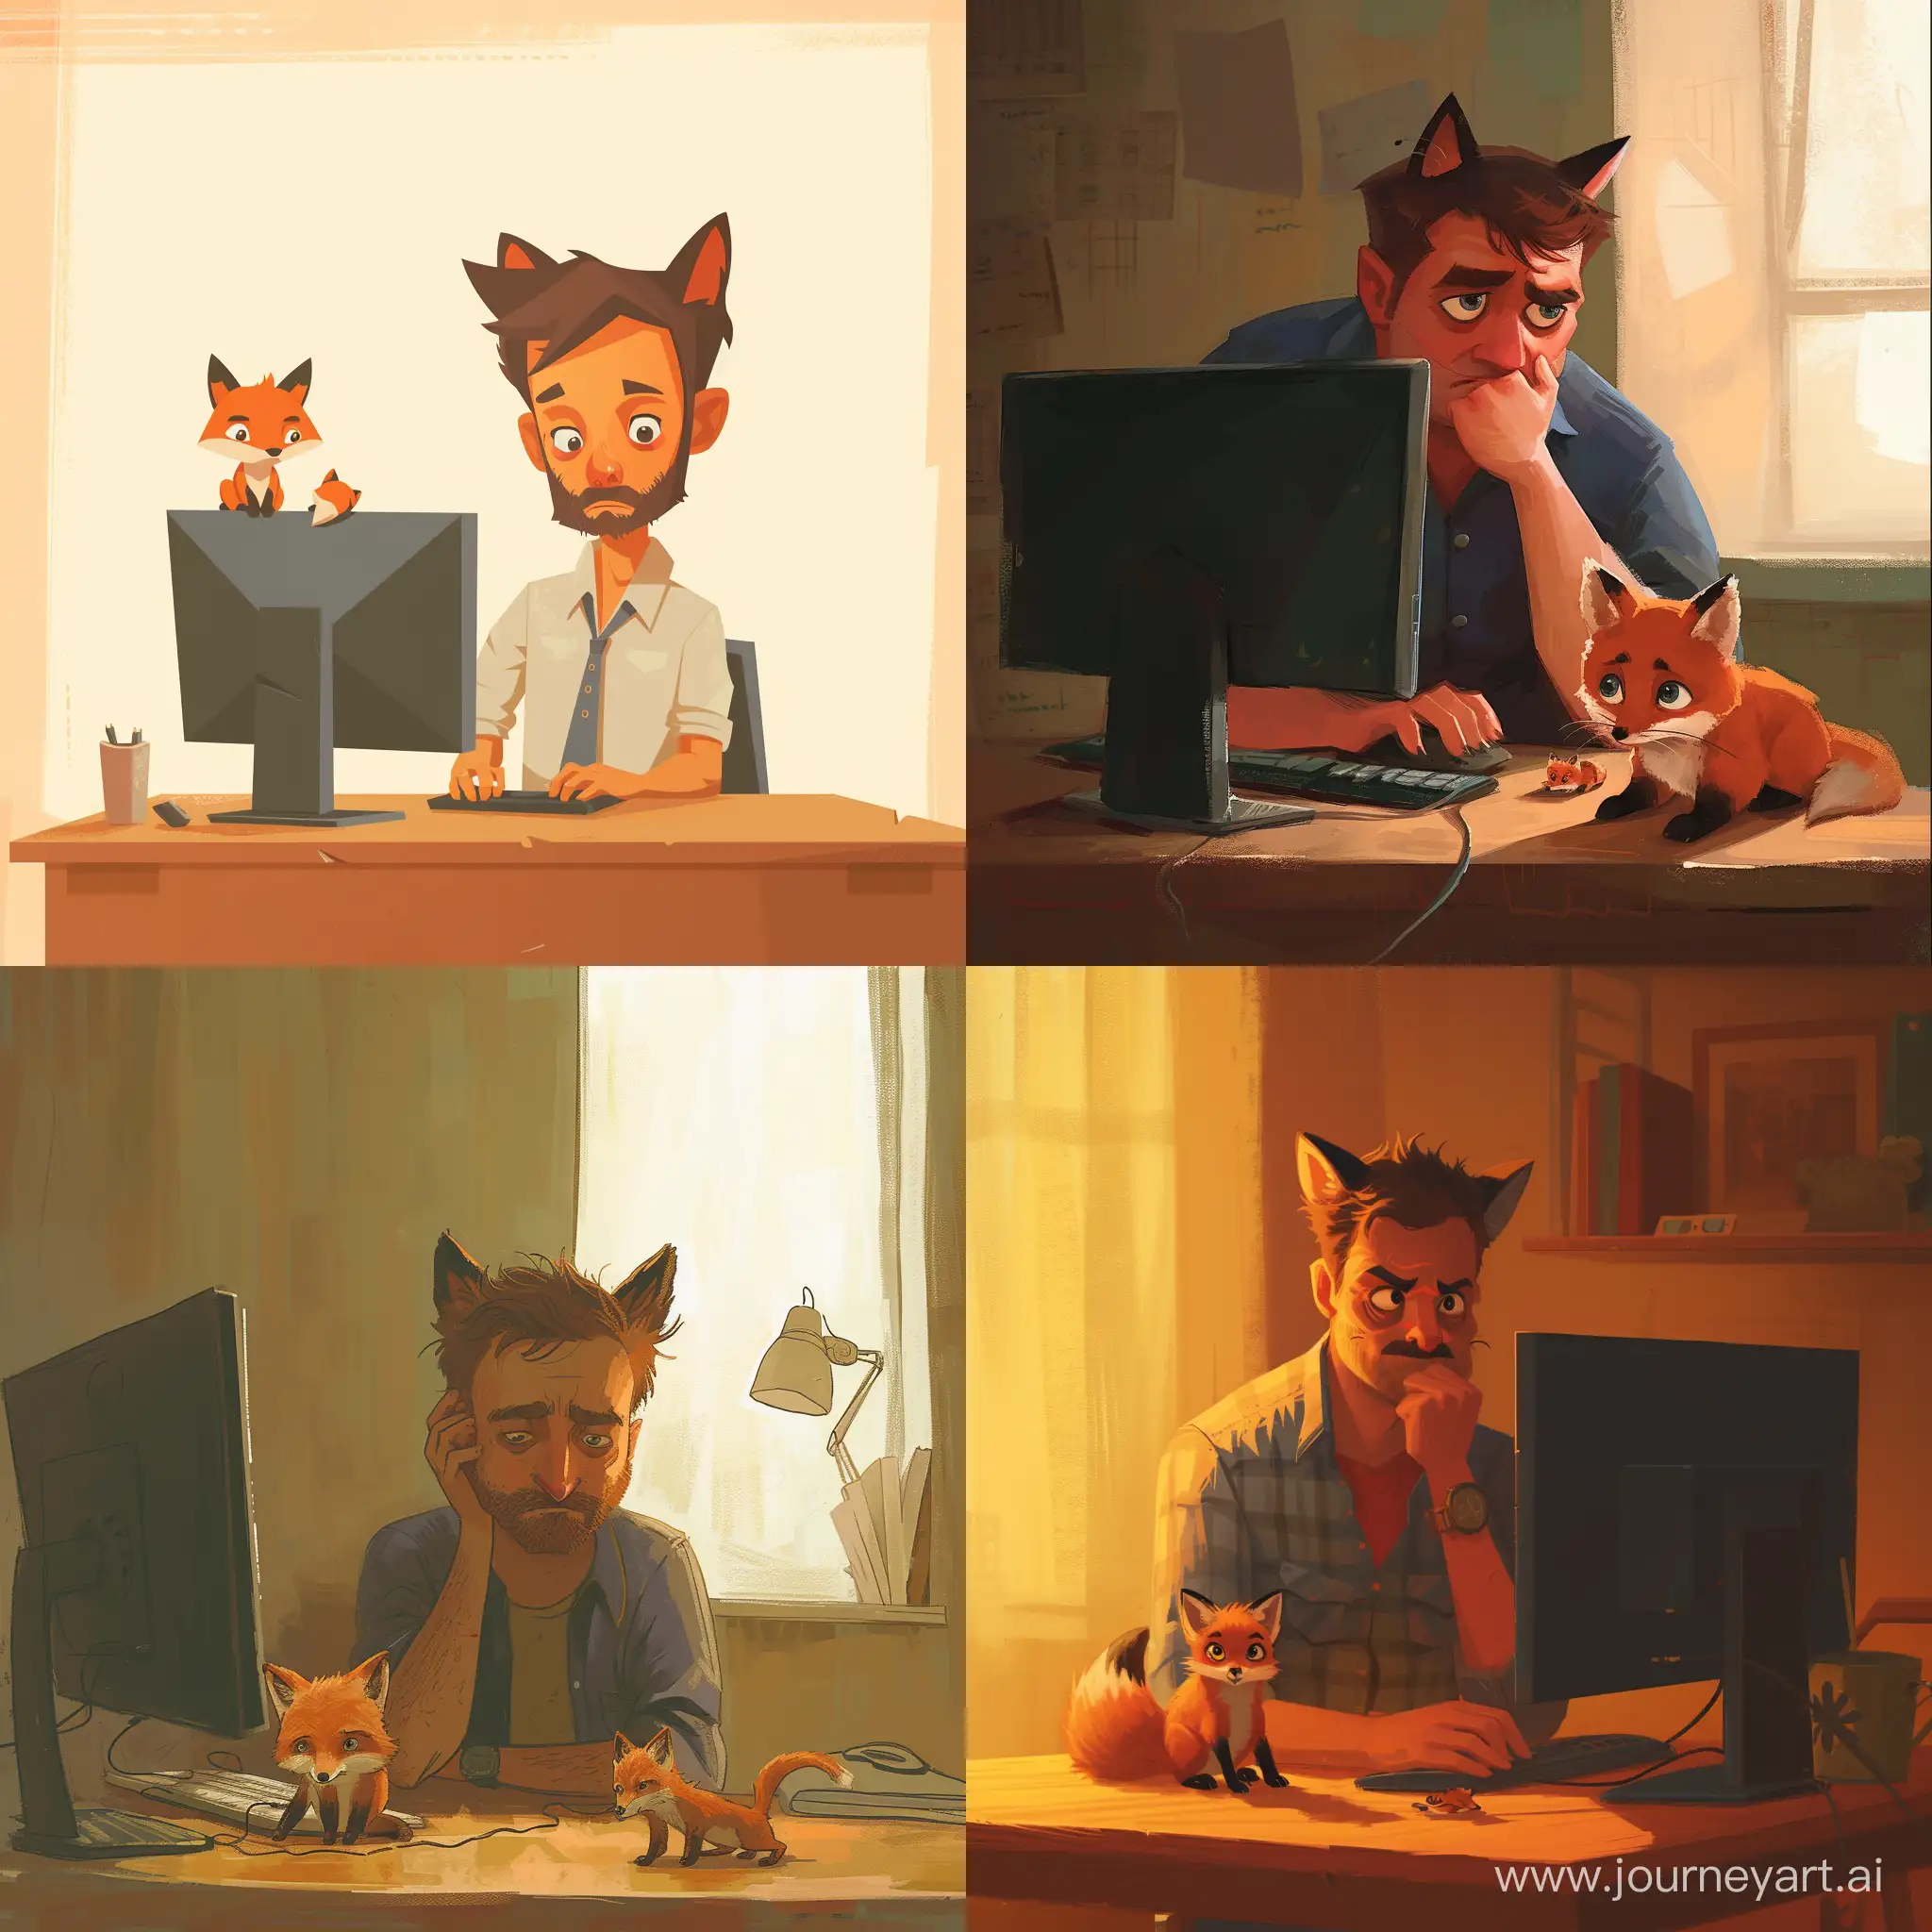 Грустный парень сидящий за компьютером, с кошачьими ушами, на столе лежит маленький лисенок, в анимационном стиле